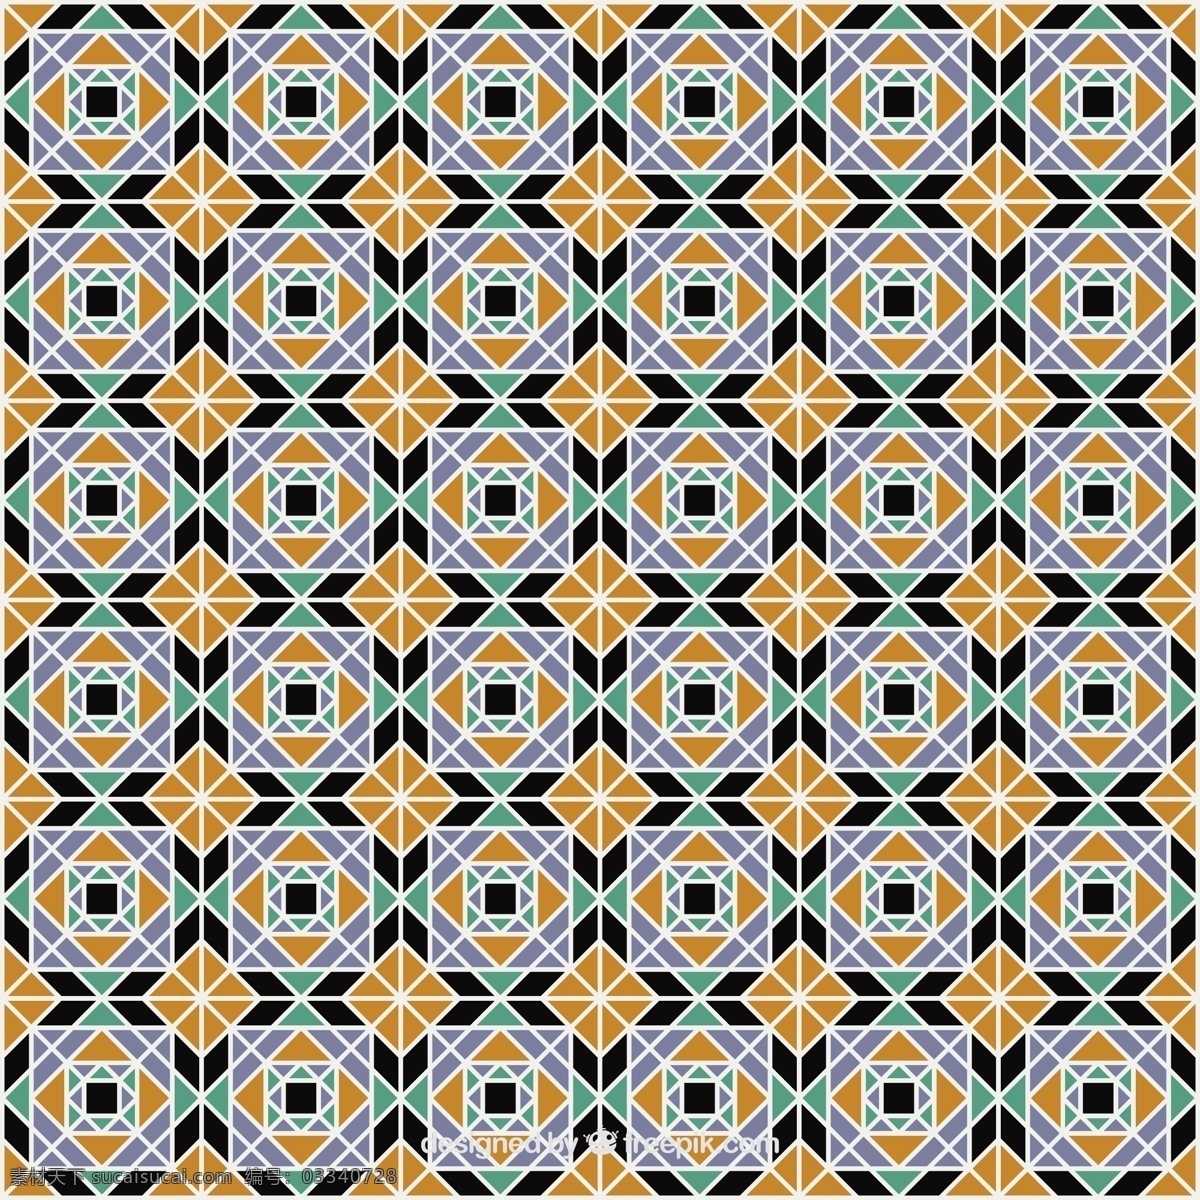 几何瓷砖背景 背景 模式 抽象 几何 形状 装饰 图案 地板 马赛克 无缝 传统的瓷砖